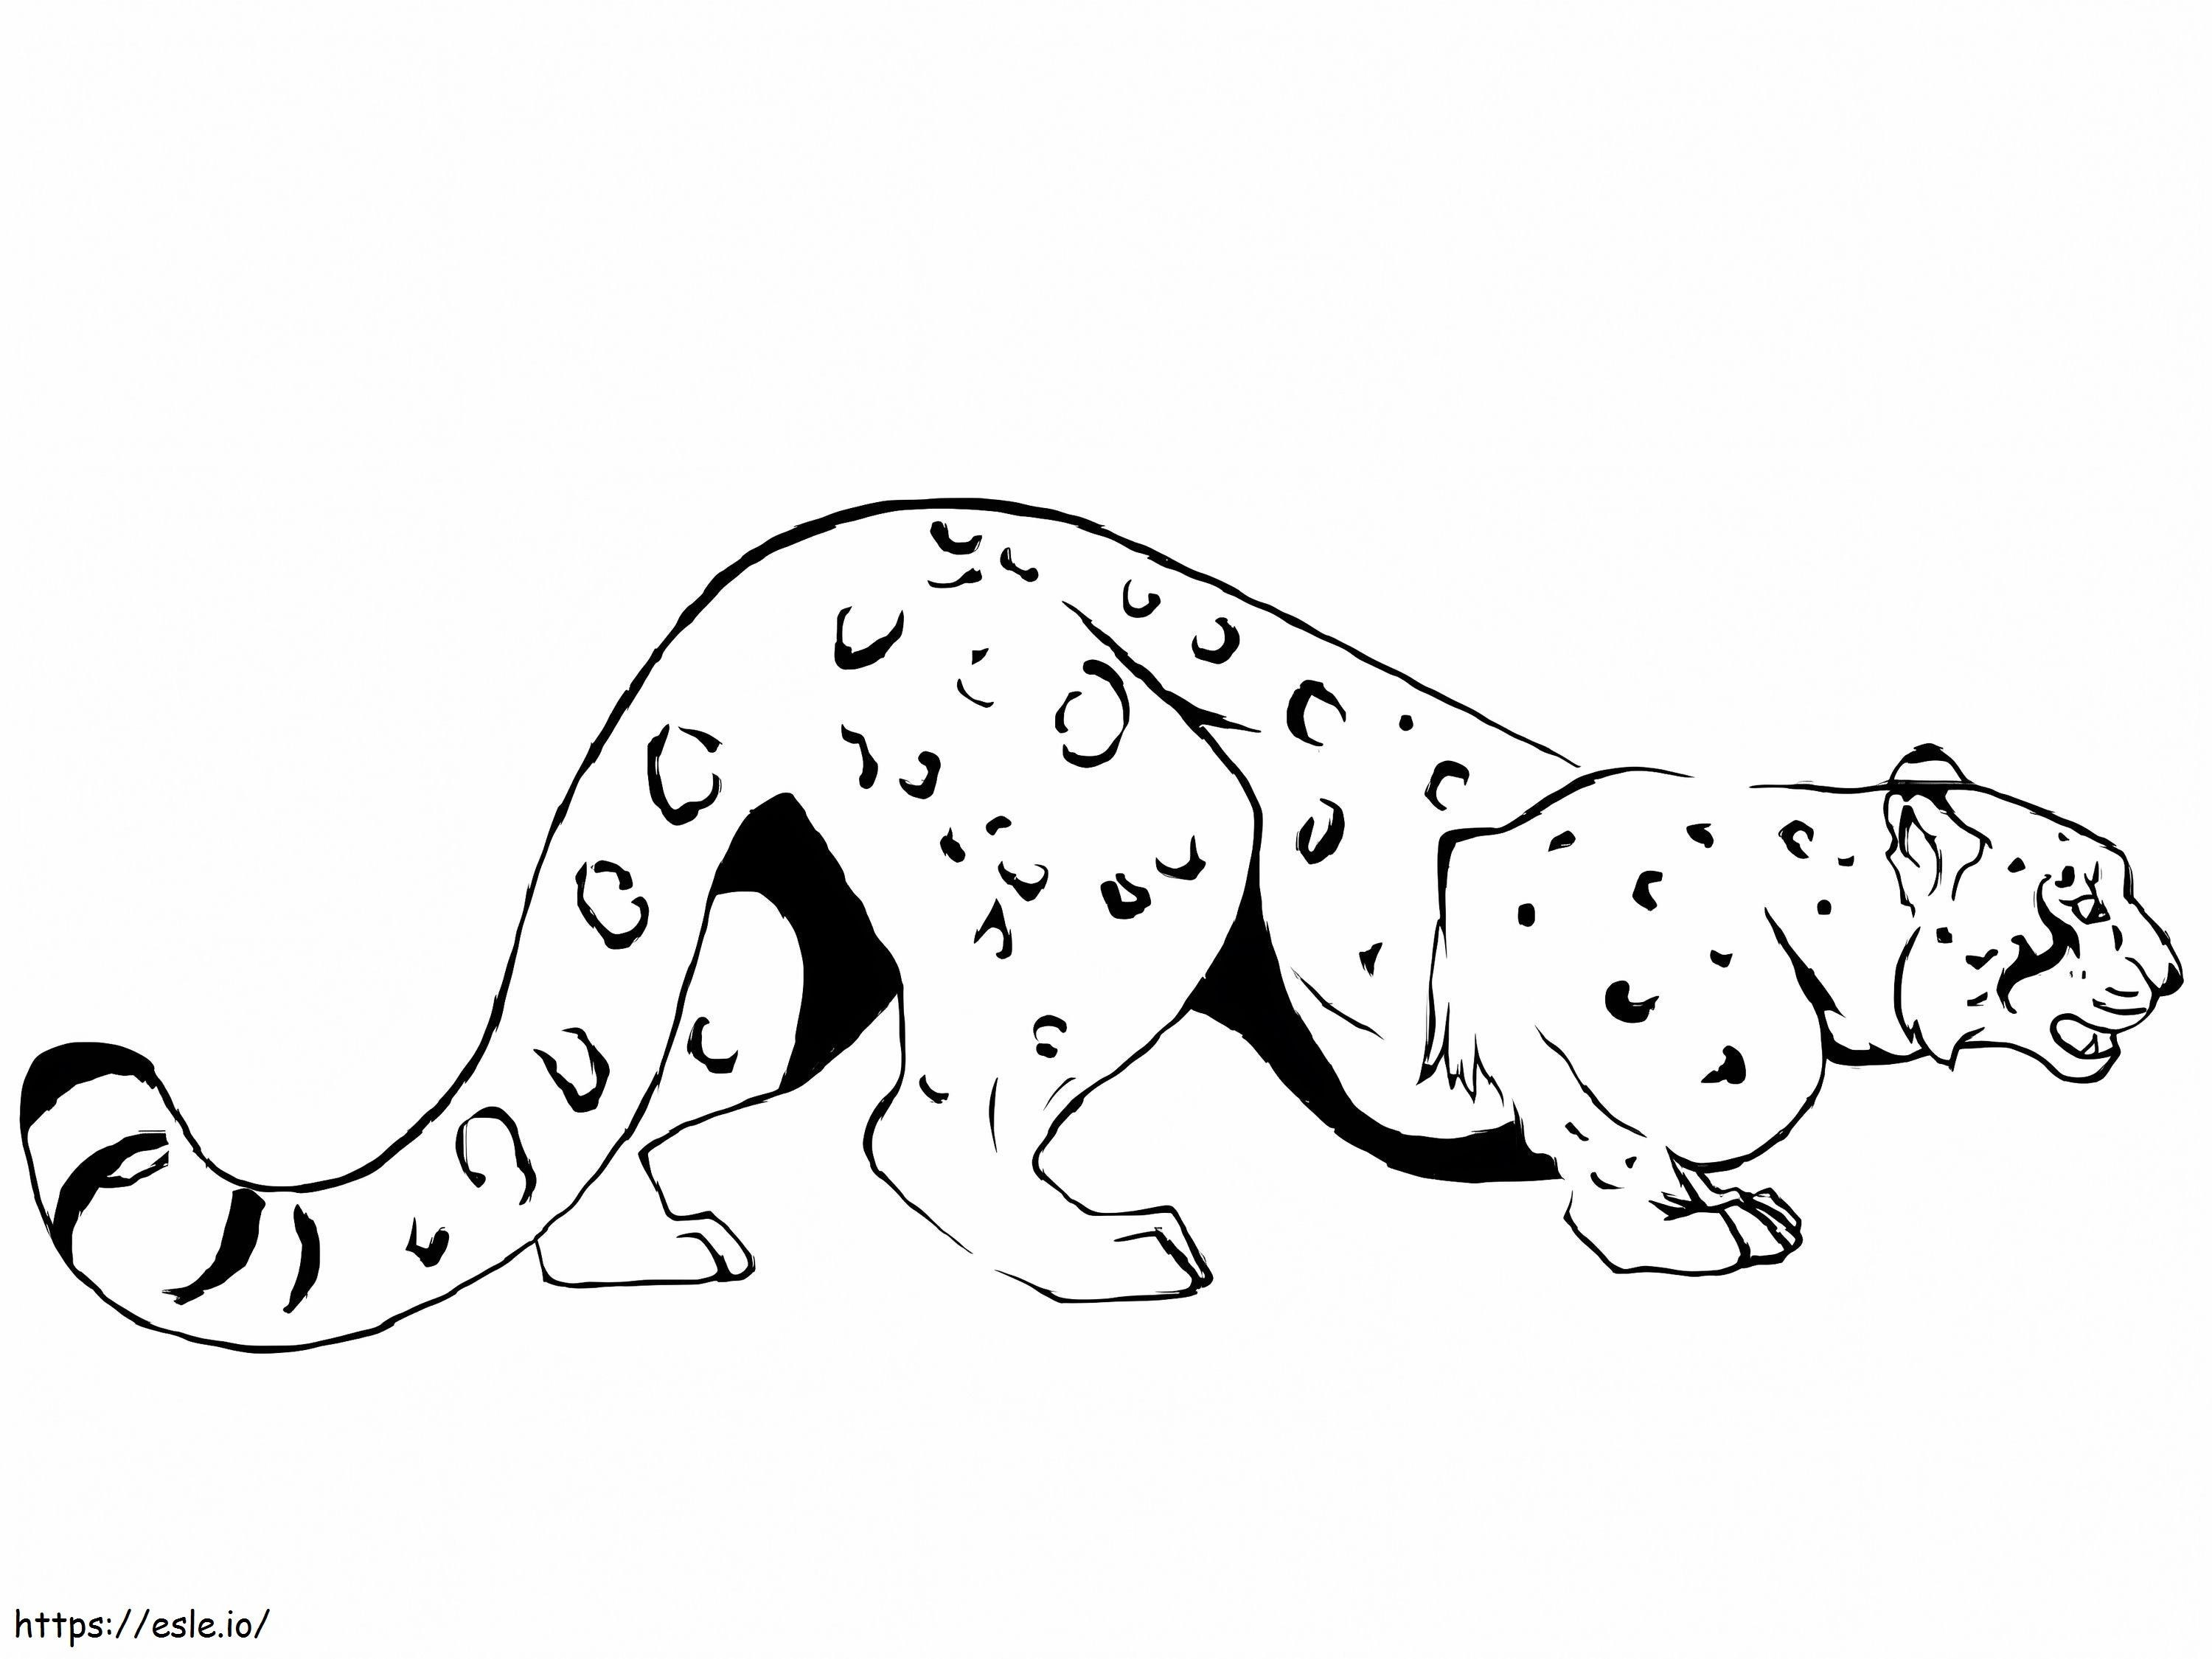 Der Jagdleopard ausmalbilder